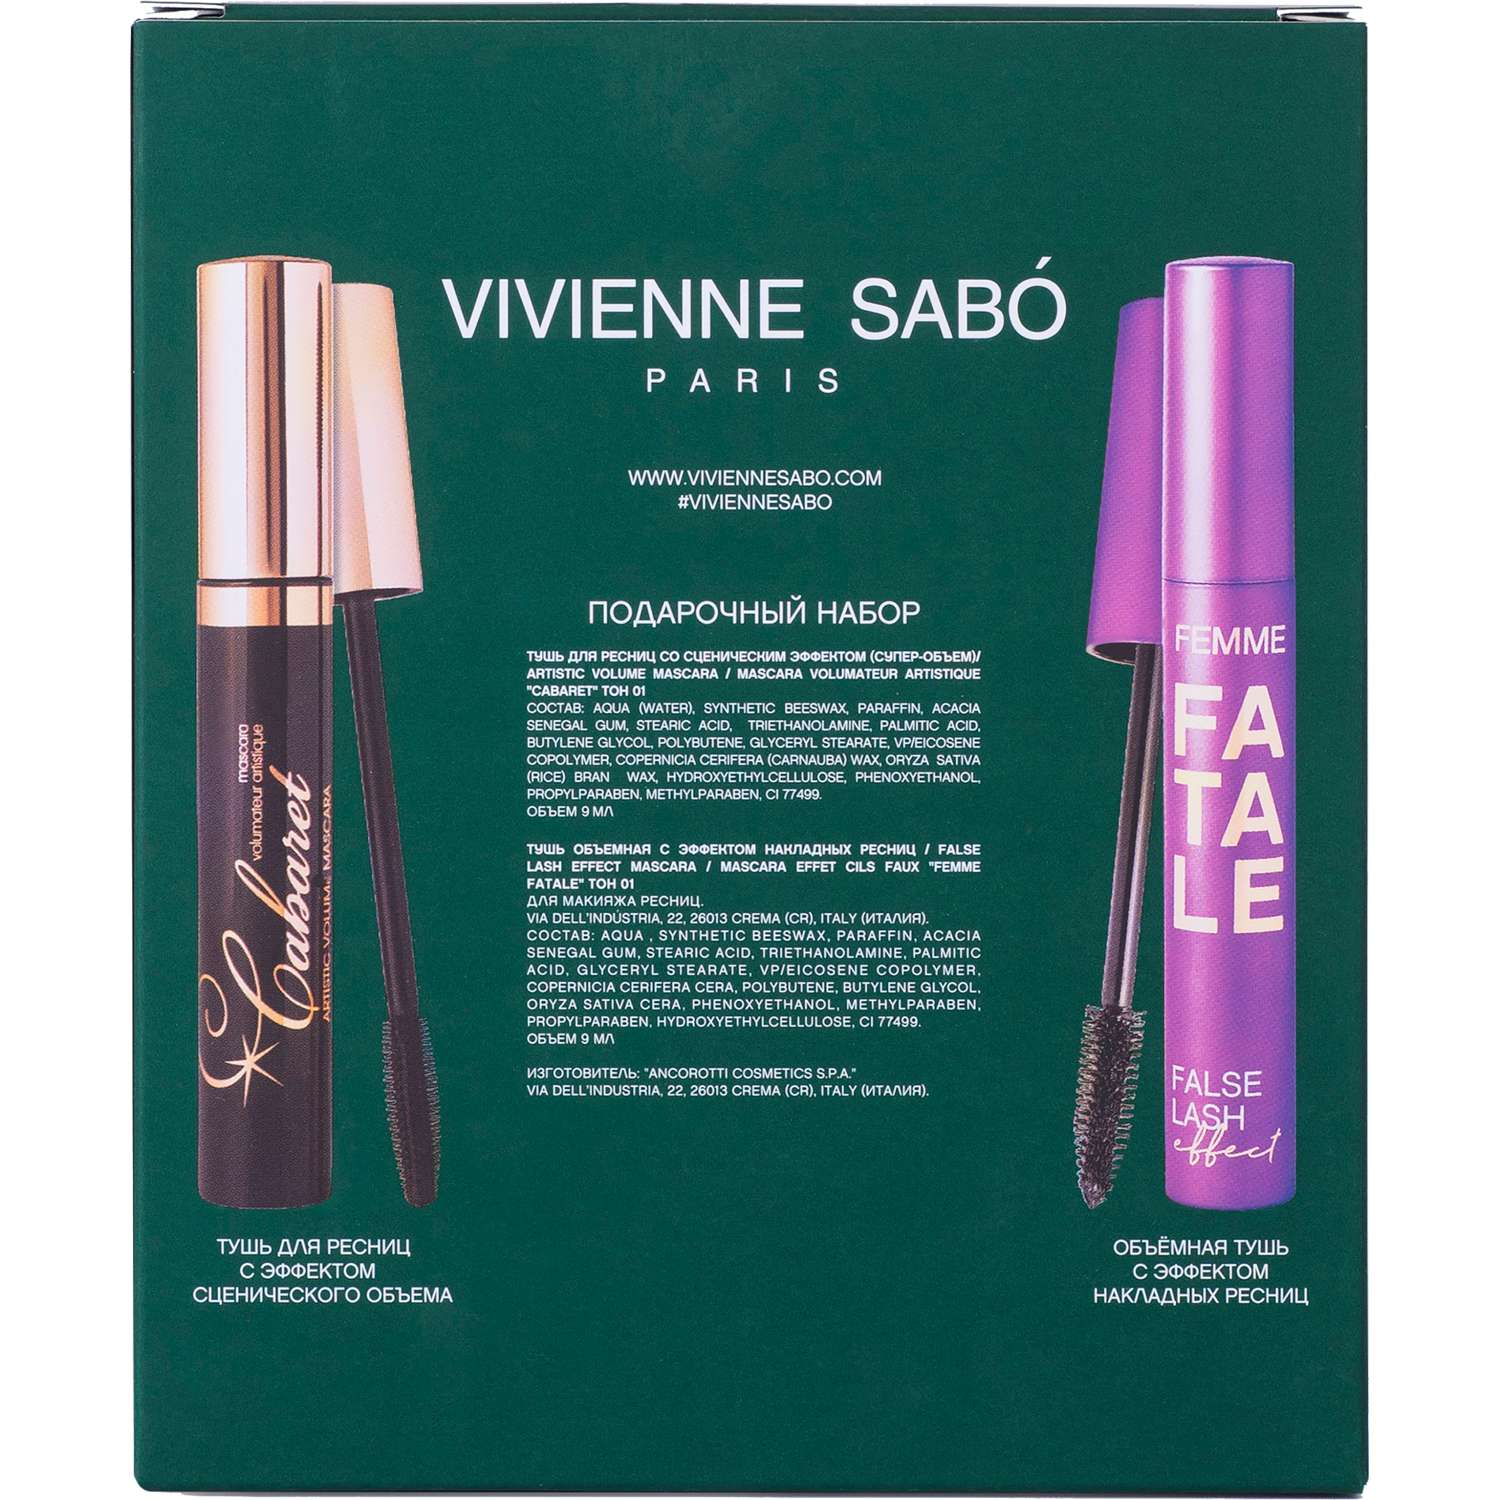 Подарочный набор Vivienne Sabo тушь Cabaret тон 01 и тушь Femme Fatale тон 01 - фото 2